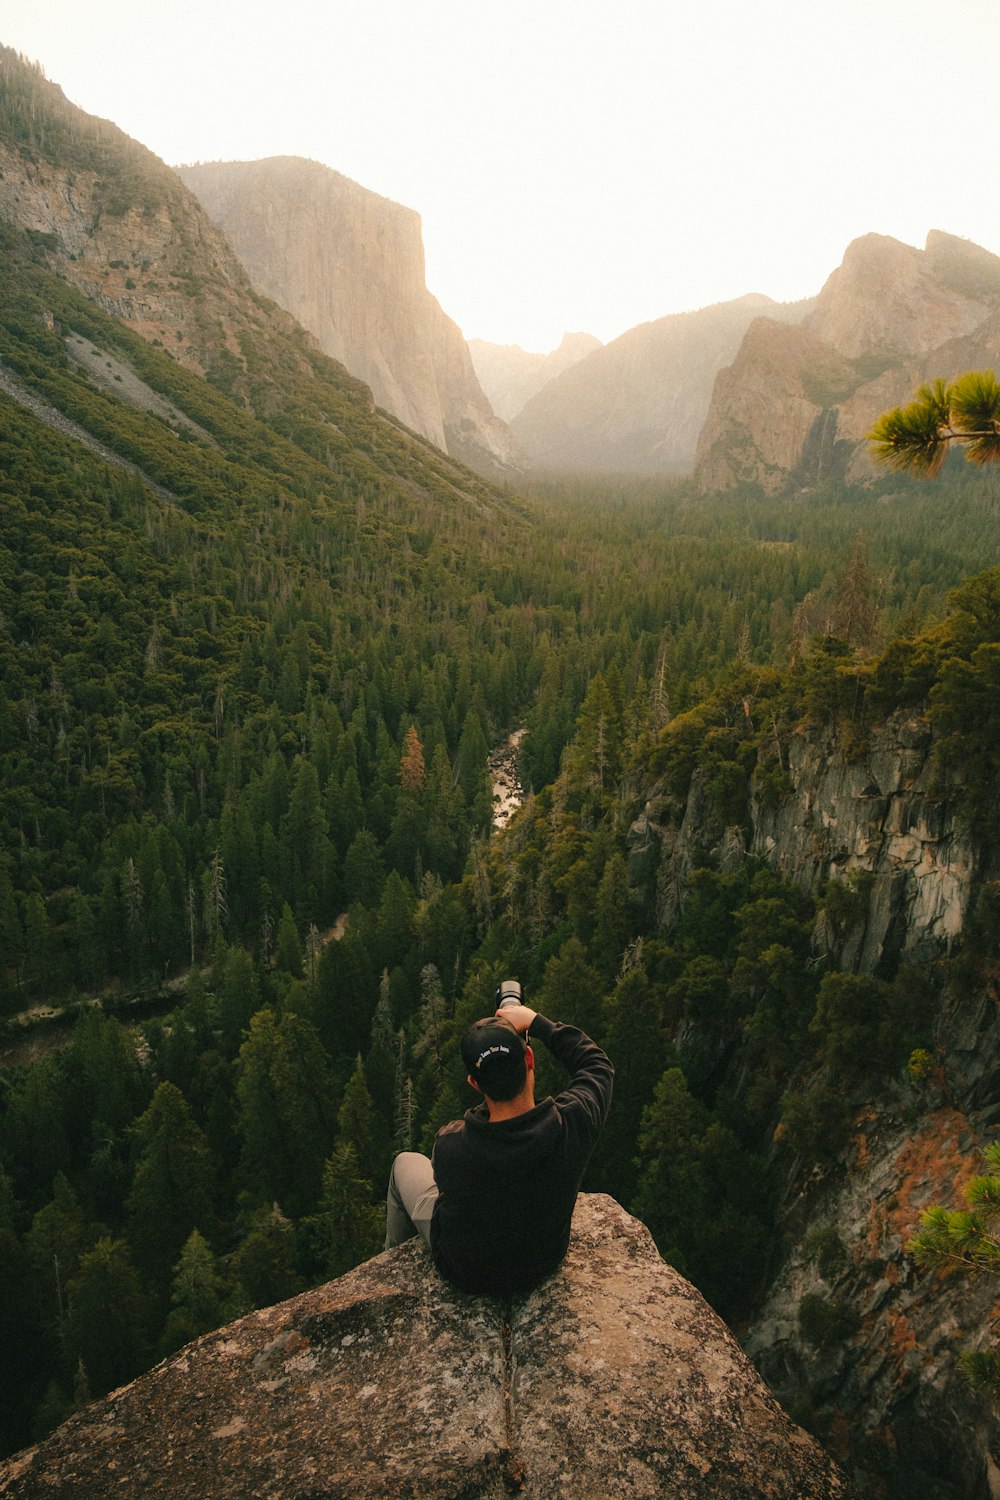 黒いジャケットと黒いズボンを着た男が岩の上に座り、昼間、緑の山々を眺めている